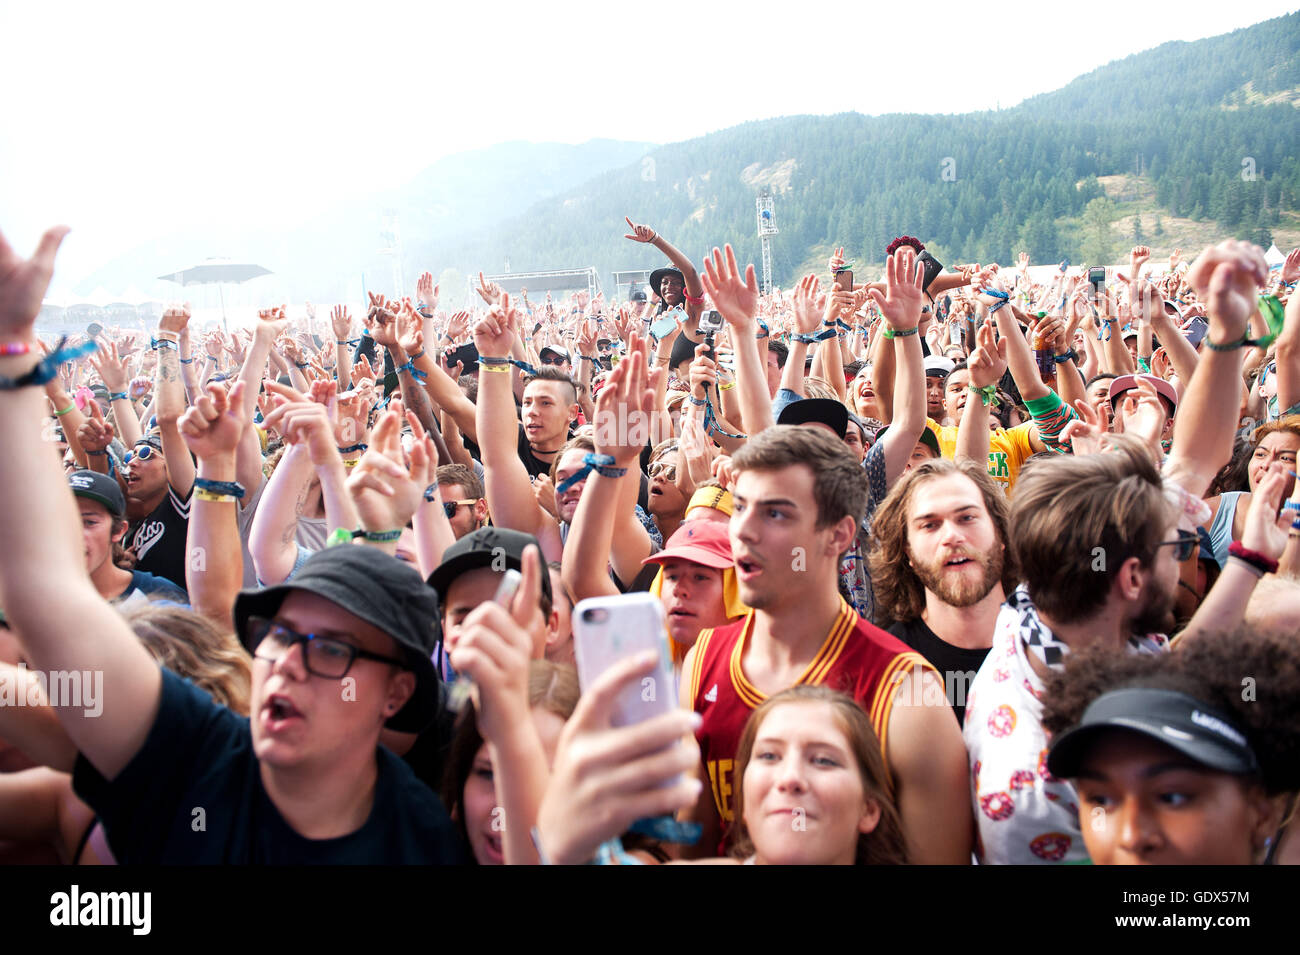 Des foules immenses les concerts rock en plein air. Fans cheer dans la pluie au Festival de musique de Pemberton. Pemberton, BC Canada Banque D'Images